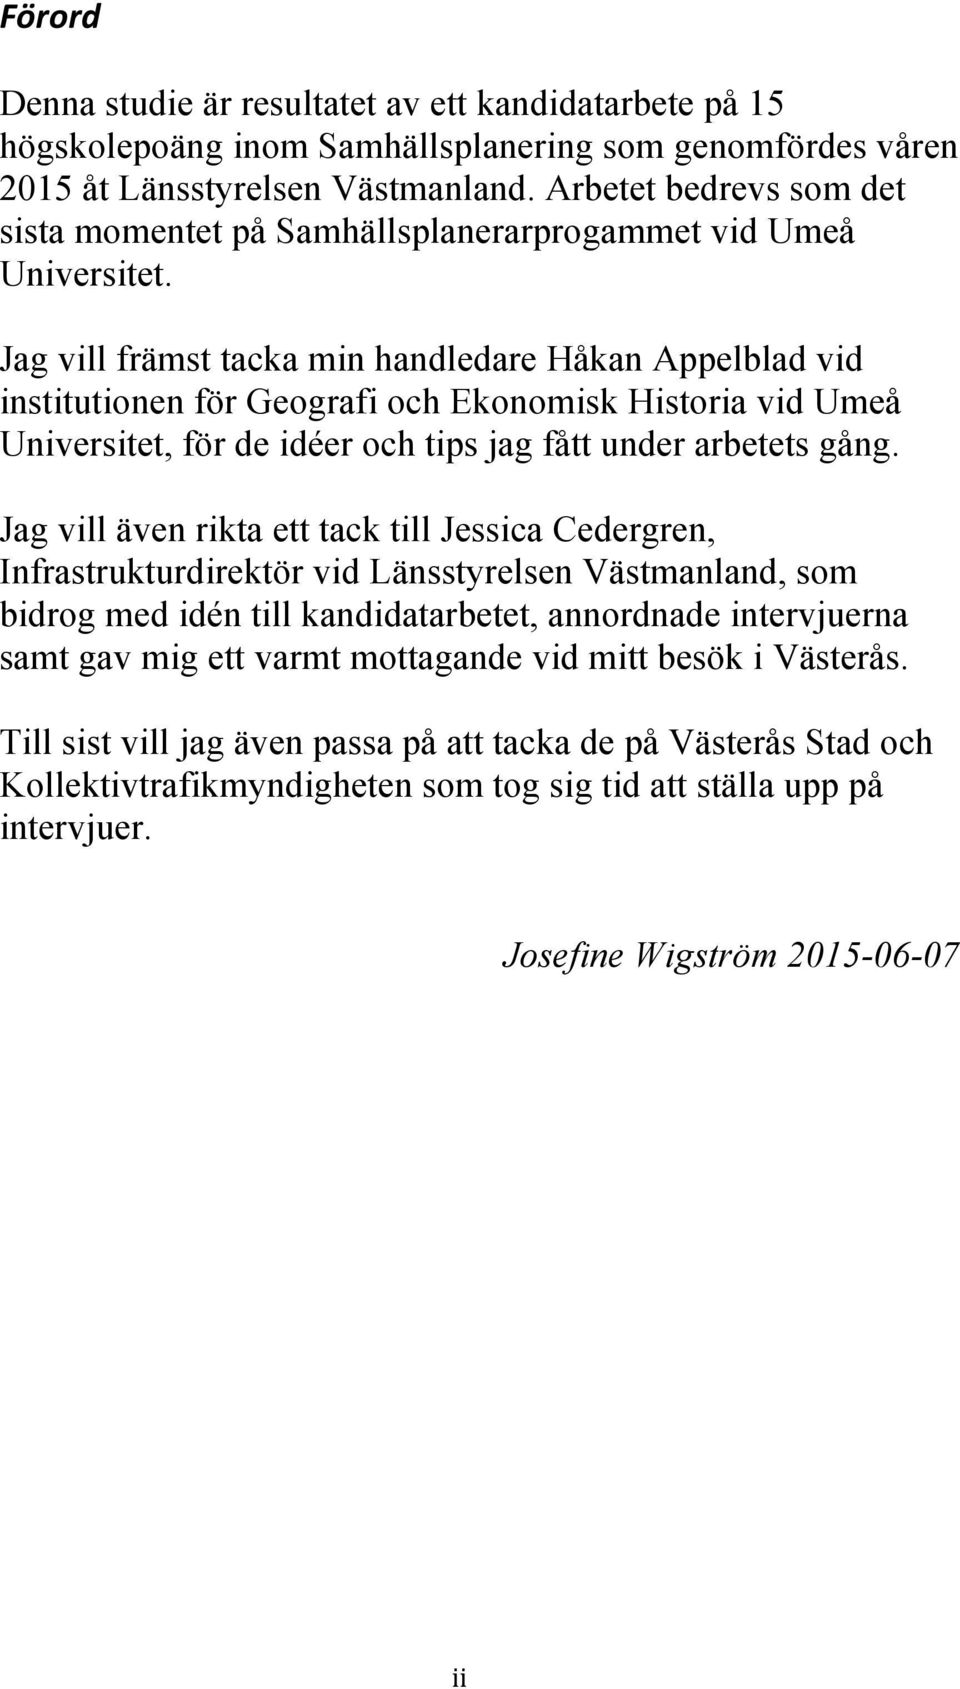 Jag vill främst tacka min handledare Håkan Appelblad vid institutionen för Geografi och Ekonomisk Historia vid Umeå Universitet, för de idéer och tips jag fått under arbetets gång.